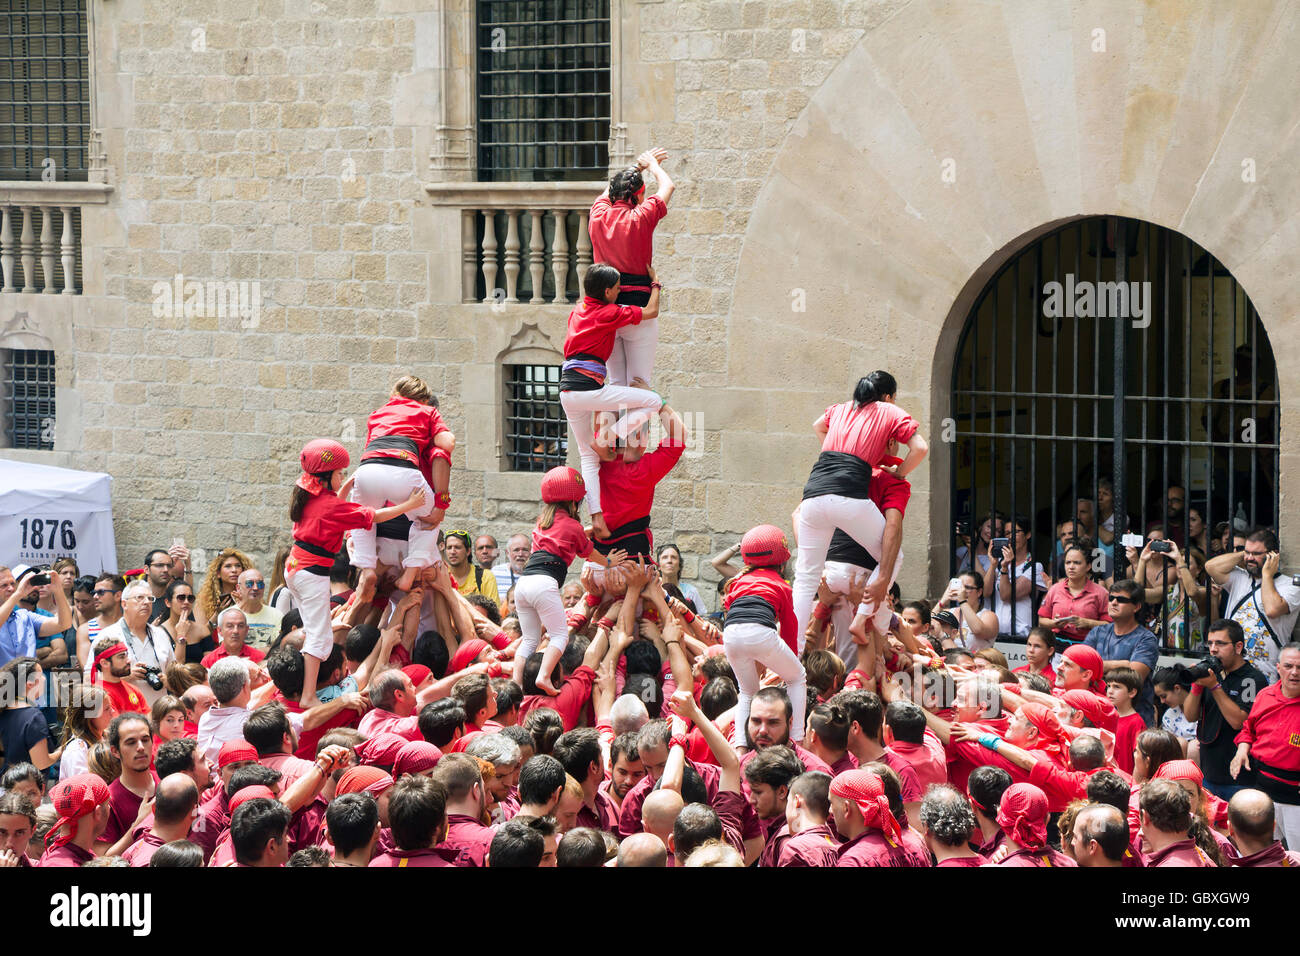 Barcellona, Spagna - 26 giugno 2016: Castellers gruppo di persone che costruire castelli umani su Giugno 26, 2016 a Barcellona. Foto Stock